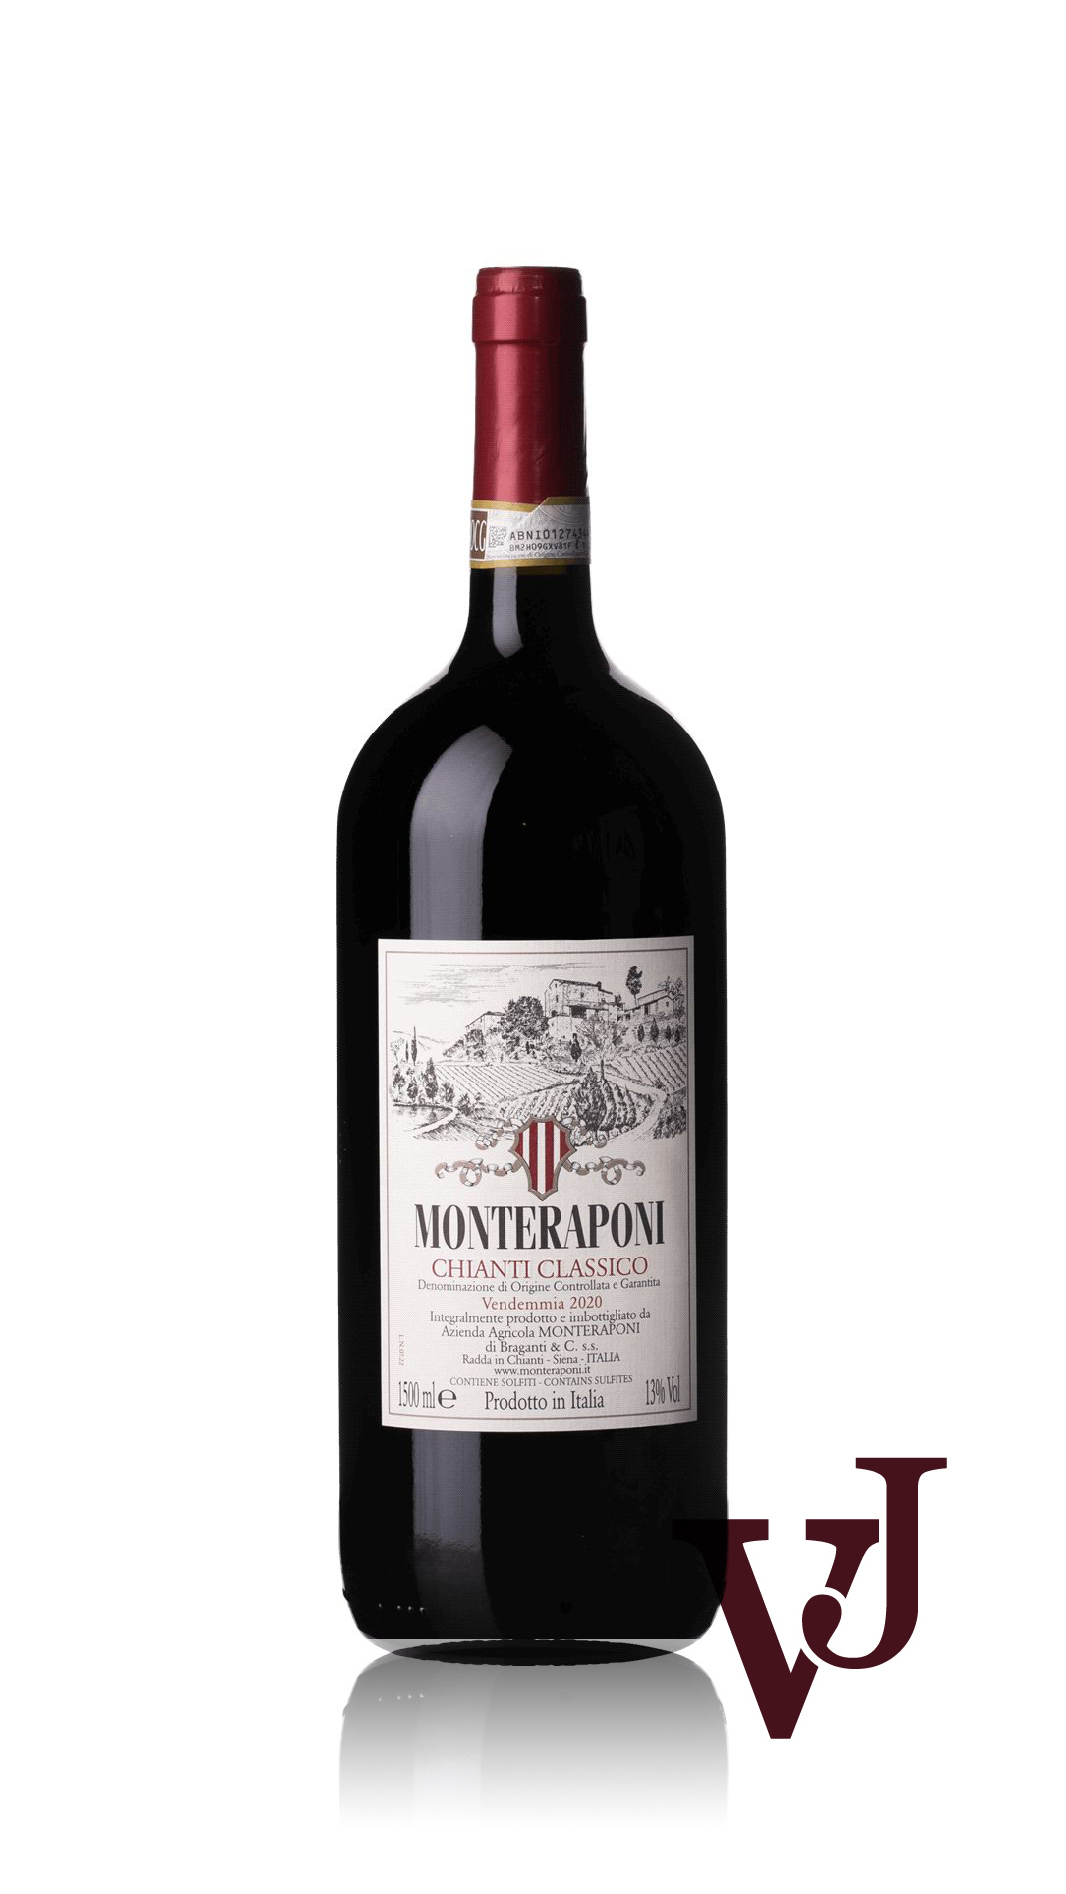 Rött Vin - Monteraponi artikel nummer 9336906 från producenten Monteraponi från området Italien